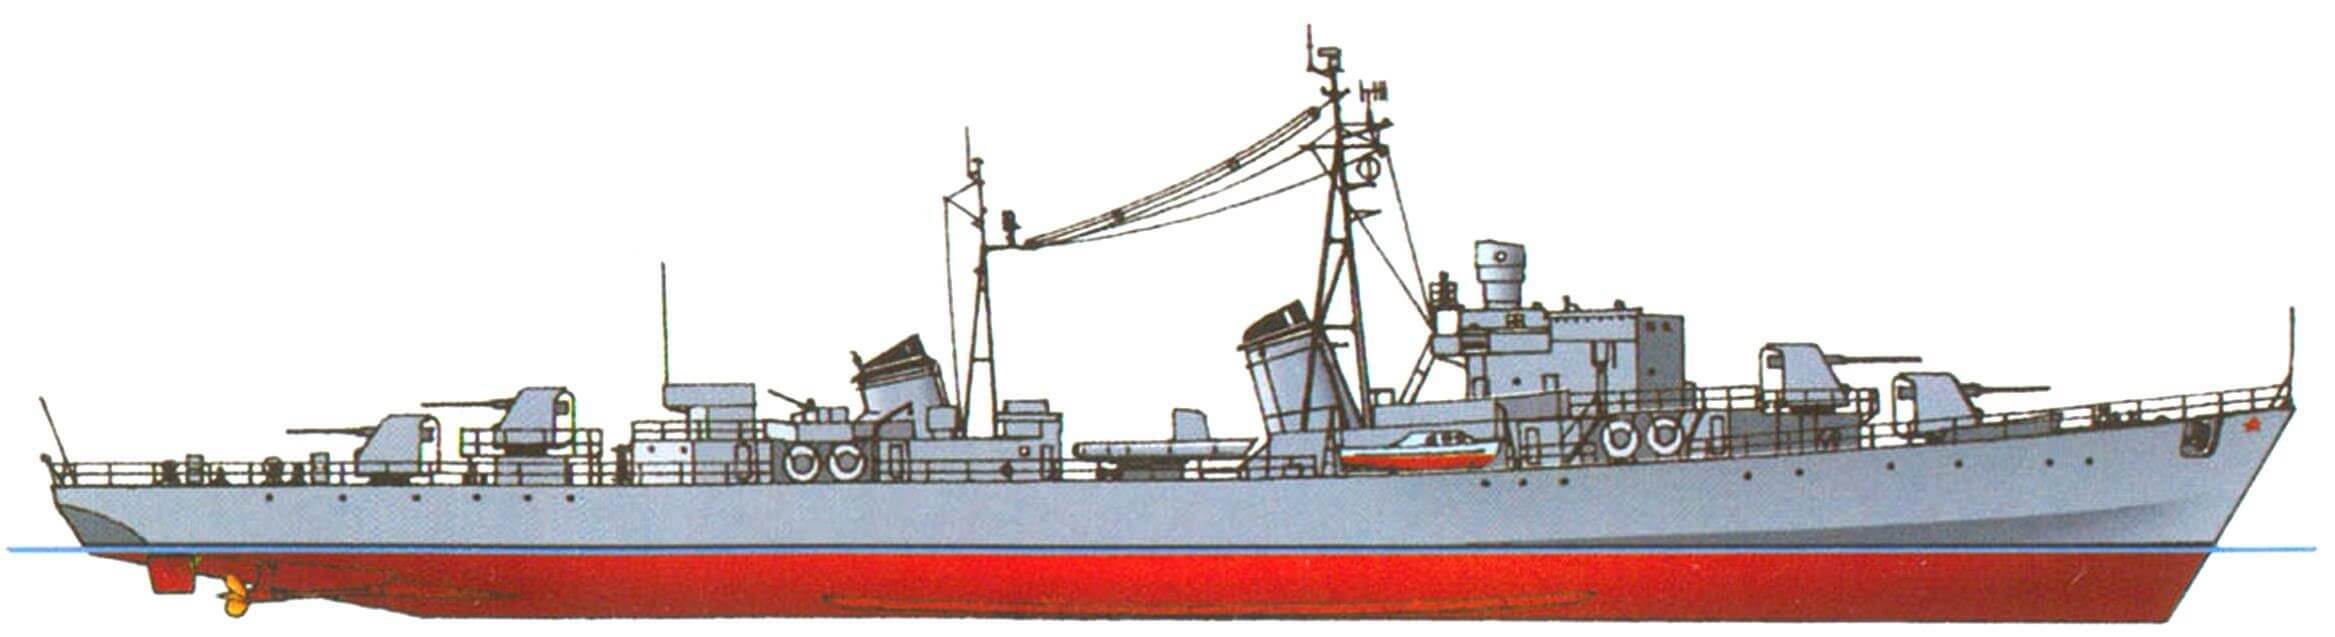 Сторожевой корабль «Сокол» (проект 42), СССР, 1952 г.